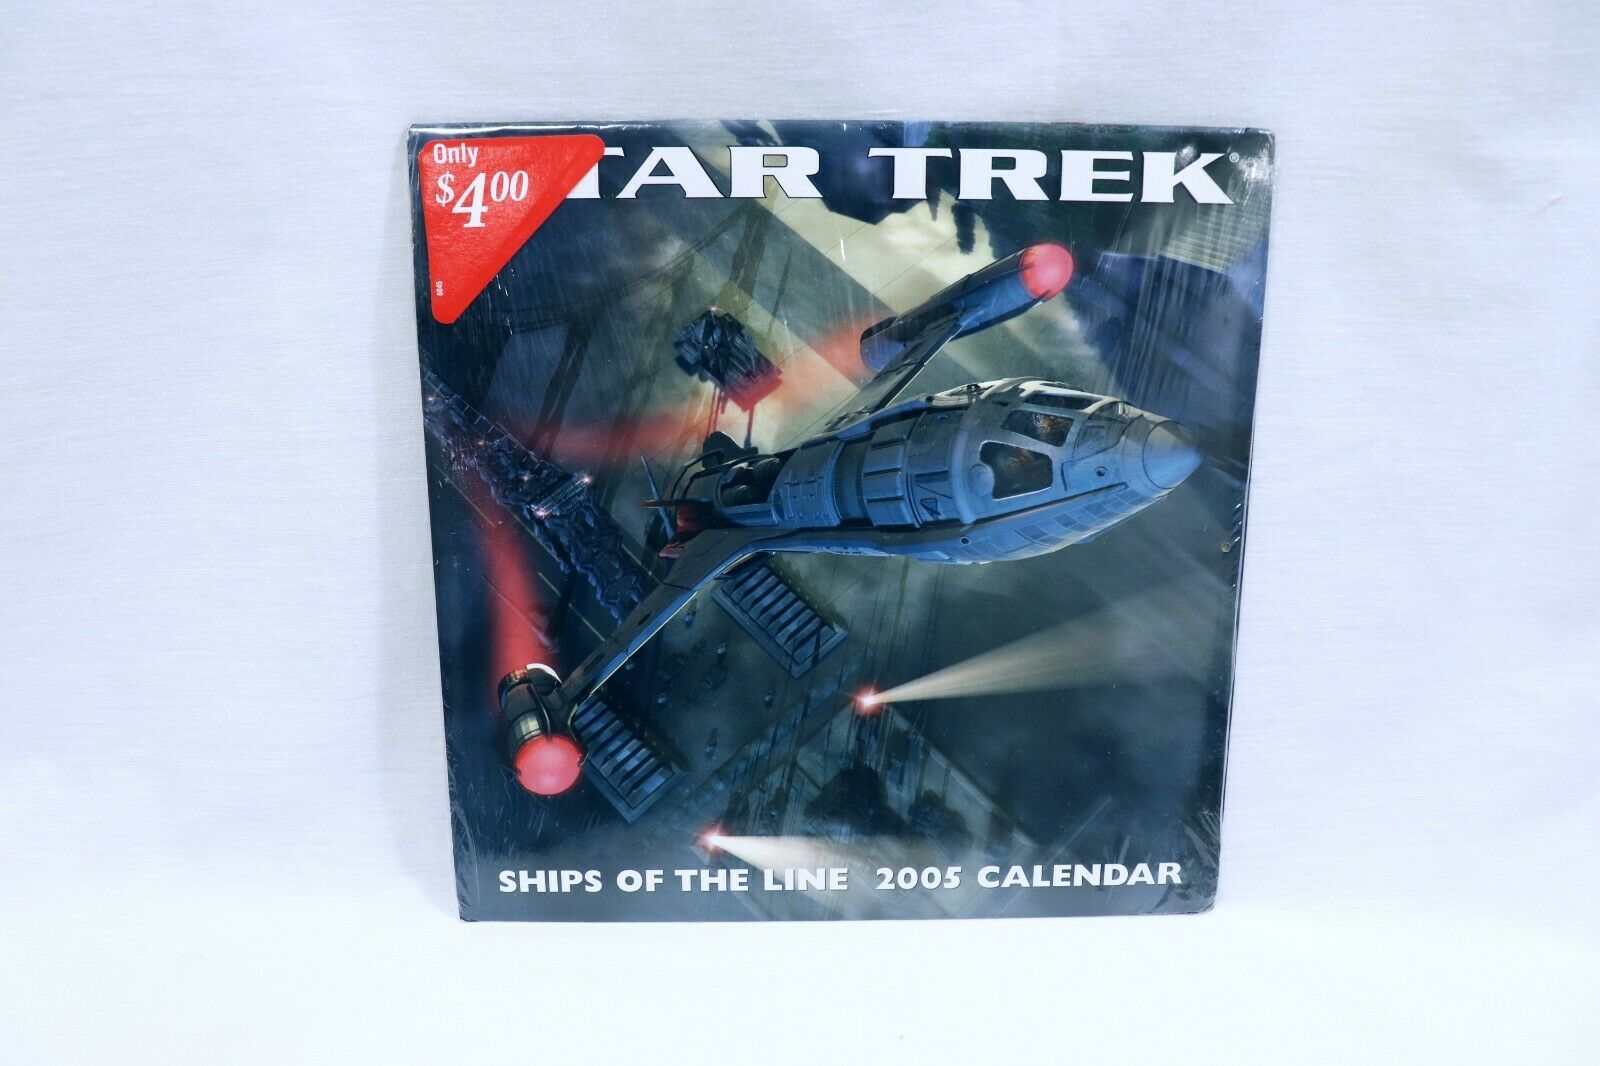 Primary image for ORIGINAL Vintage 2005 Star Trek Calendar Ships of the Line